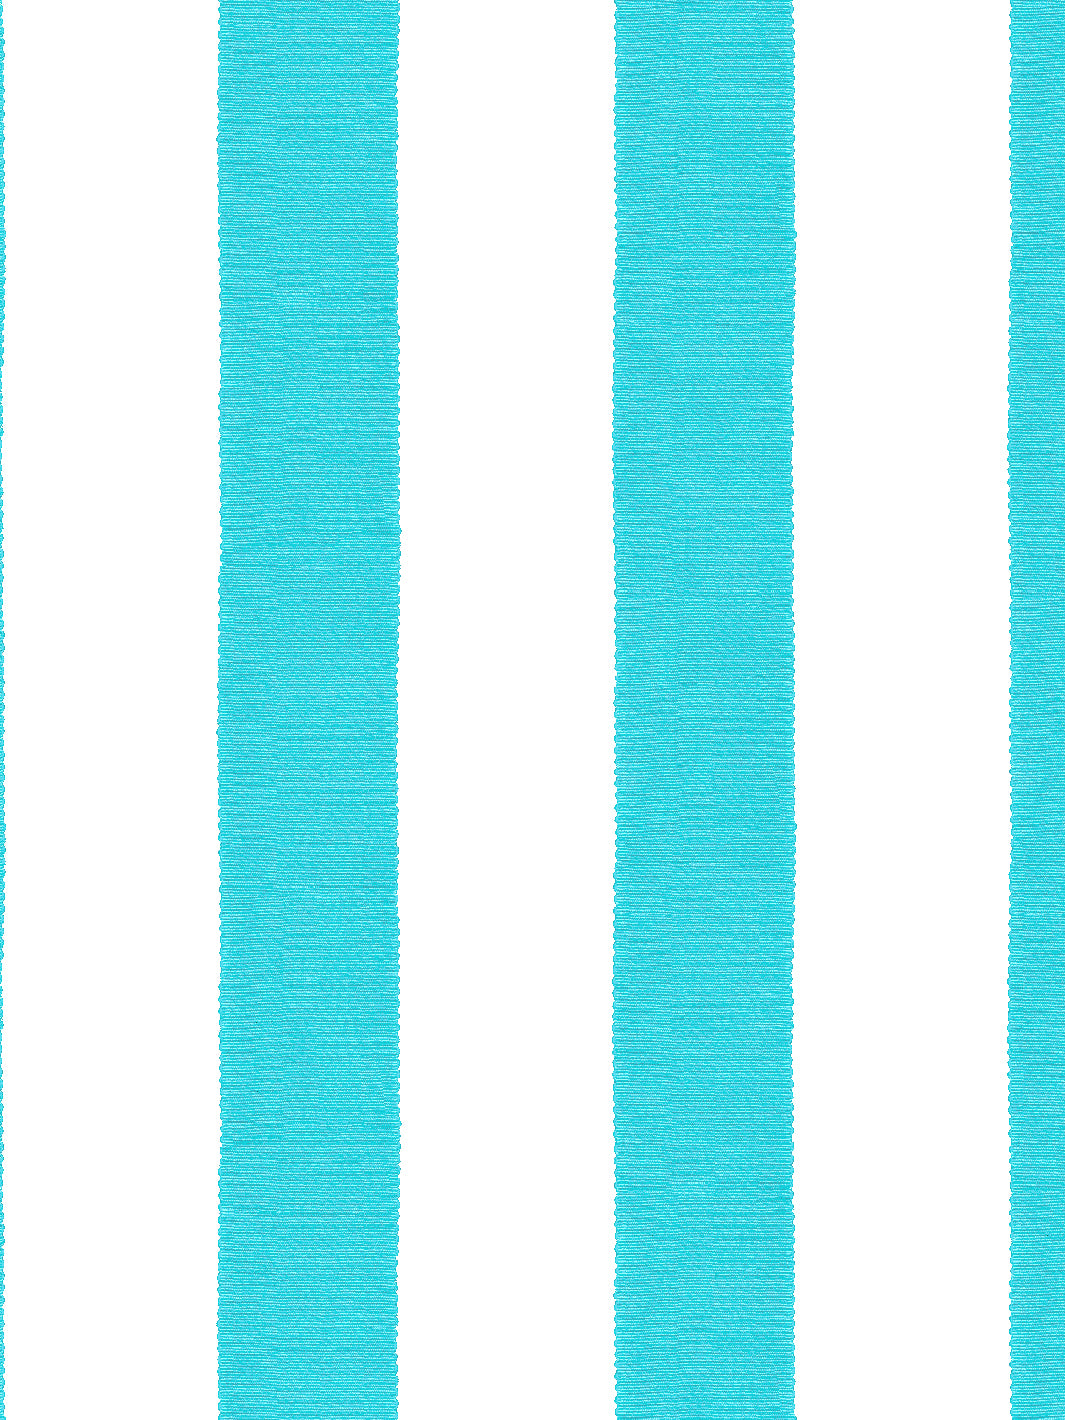 'Grosgrain Stripe on White' Wallpaper by Sarah Jessica Parker - Capri Blue